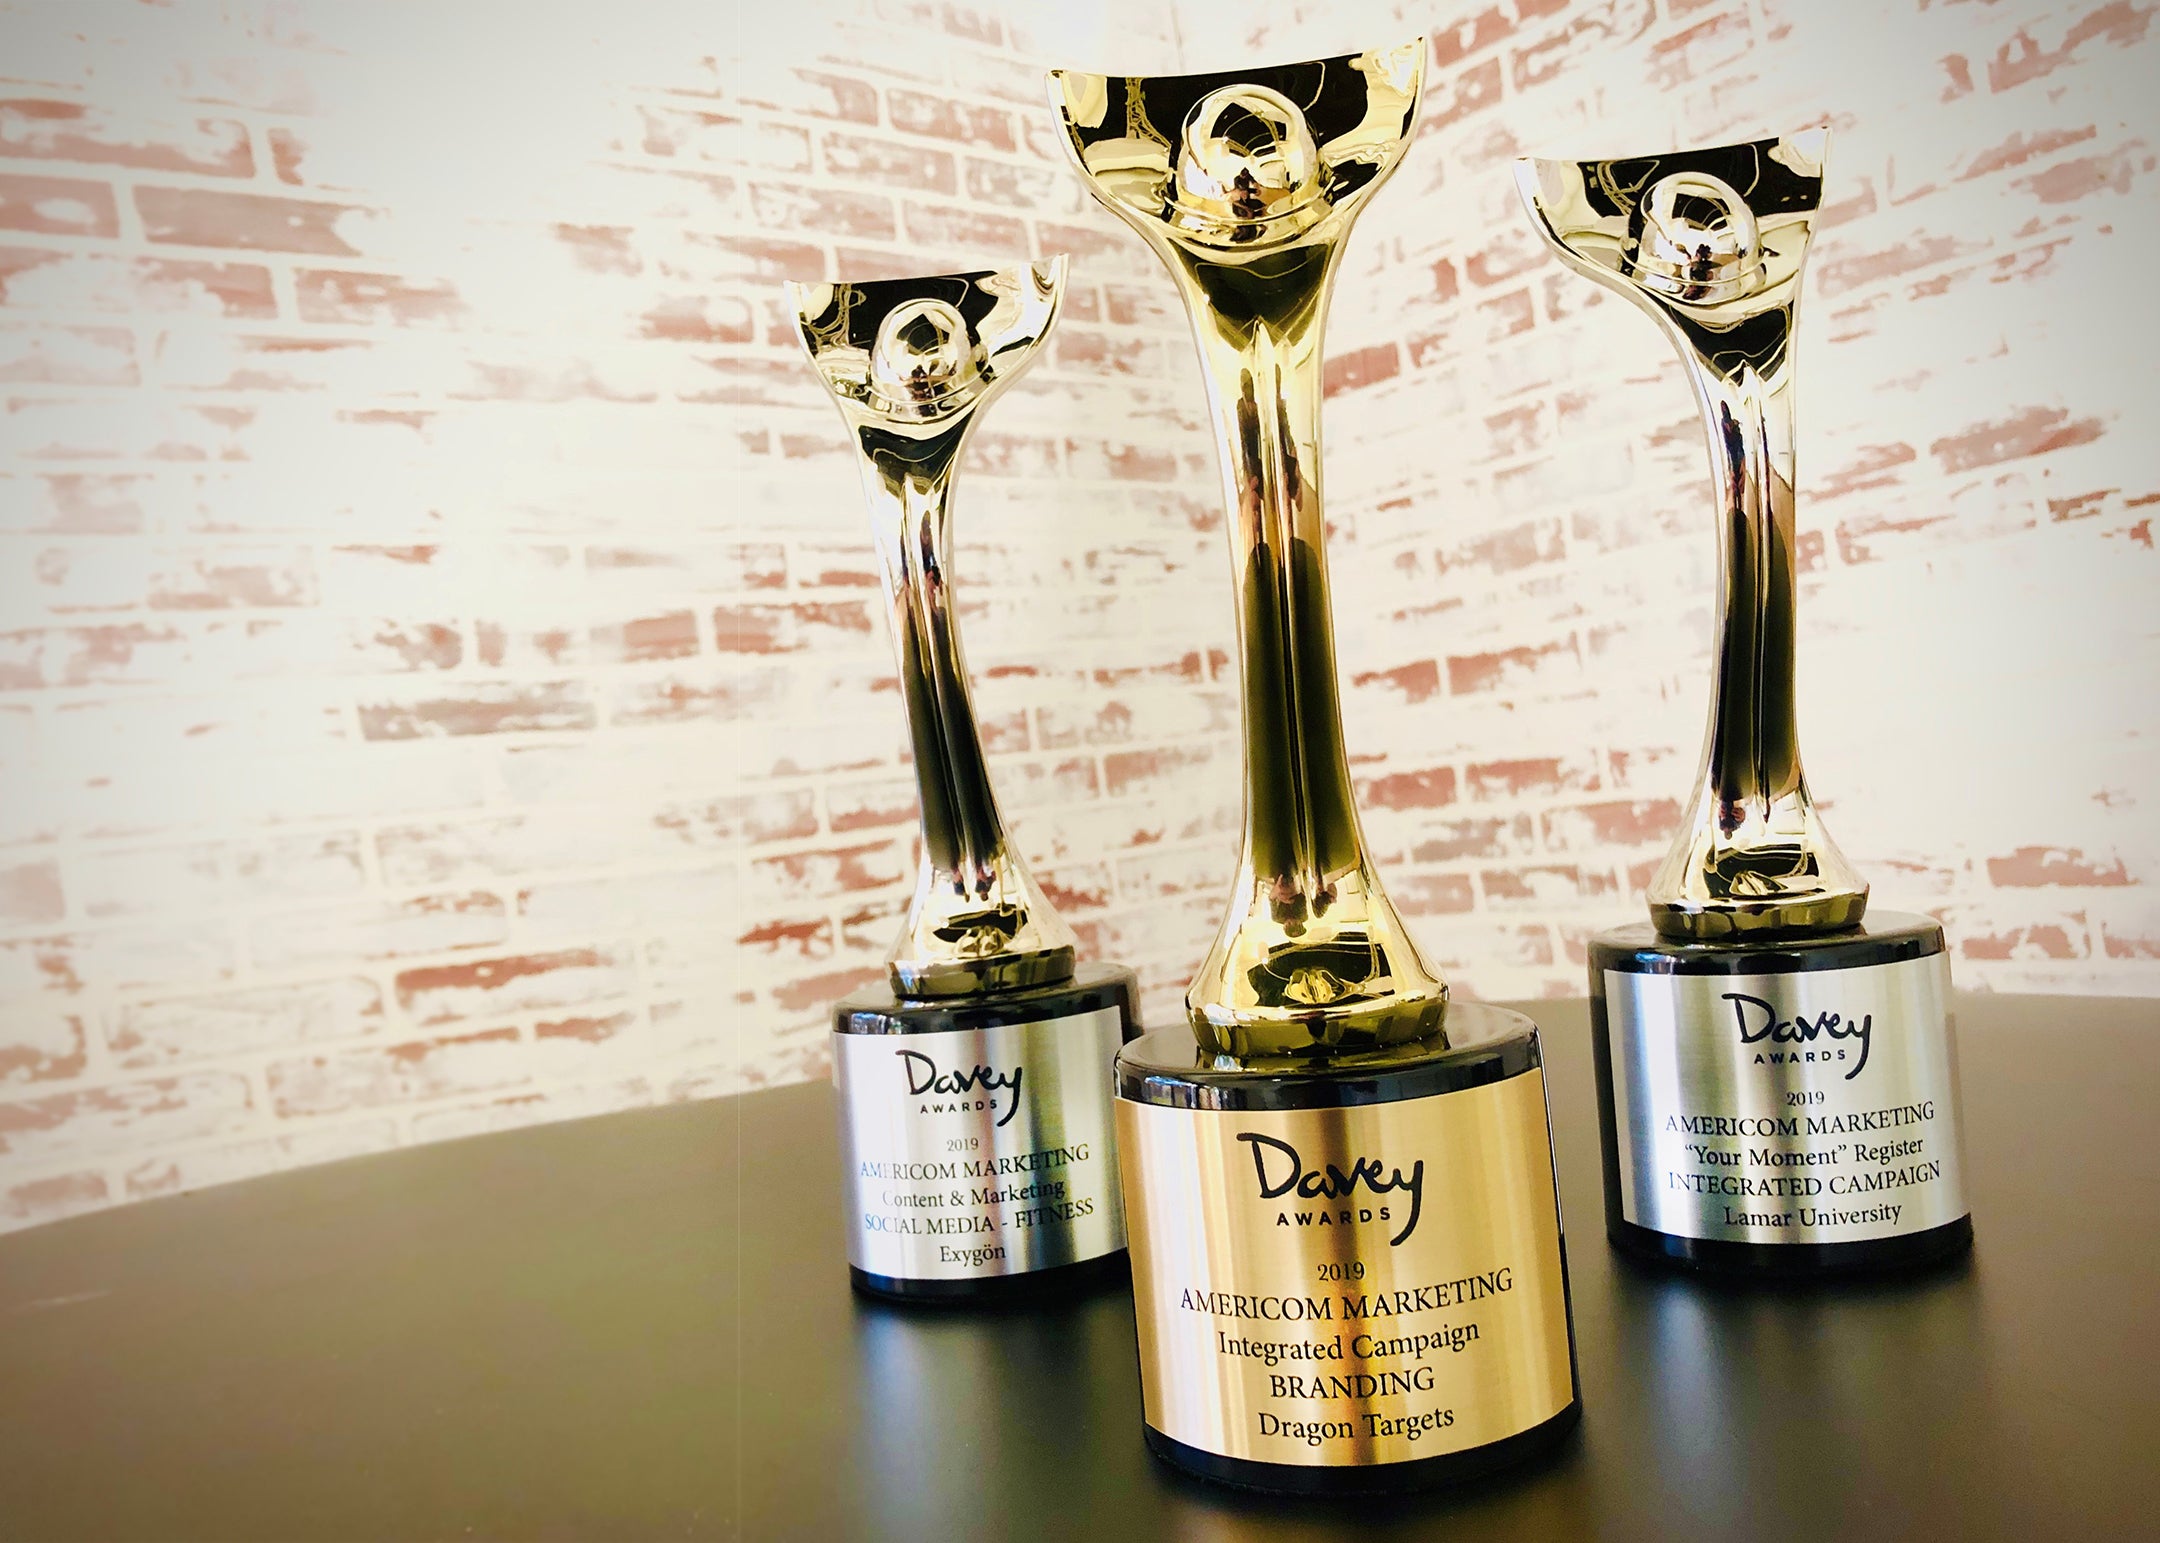 Americom Marketing wins 3 Davey Awards